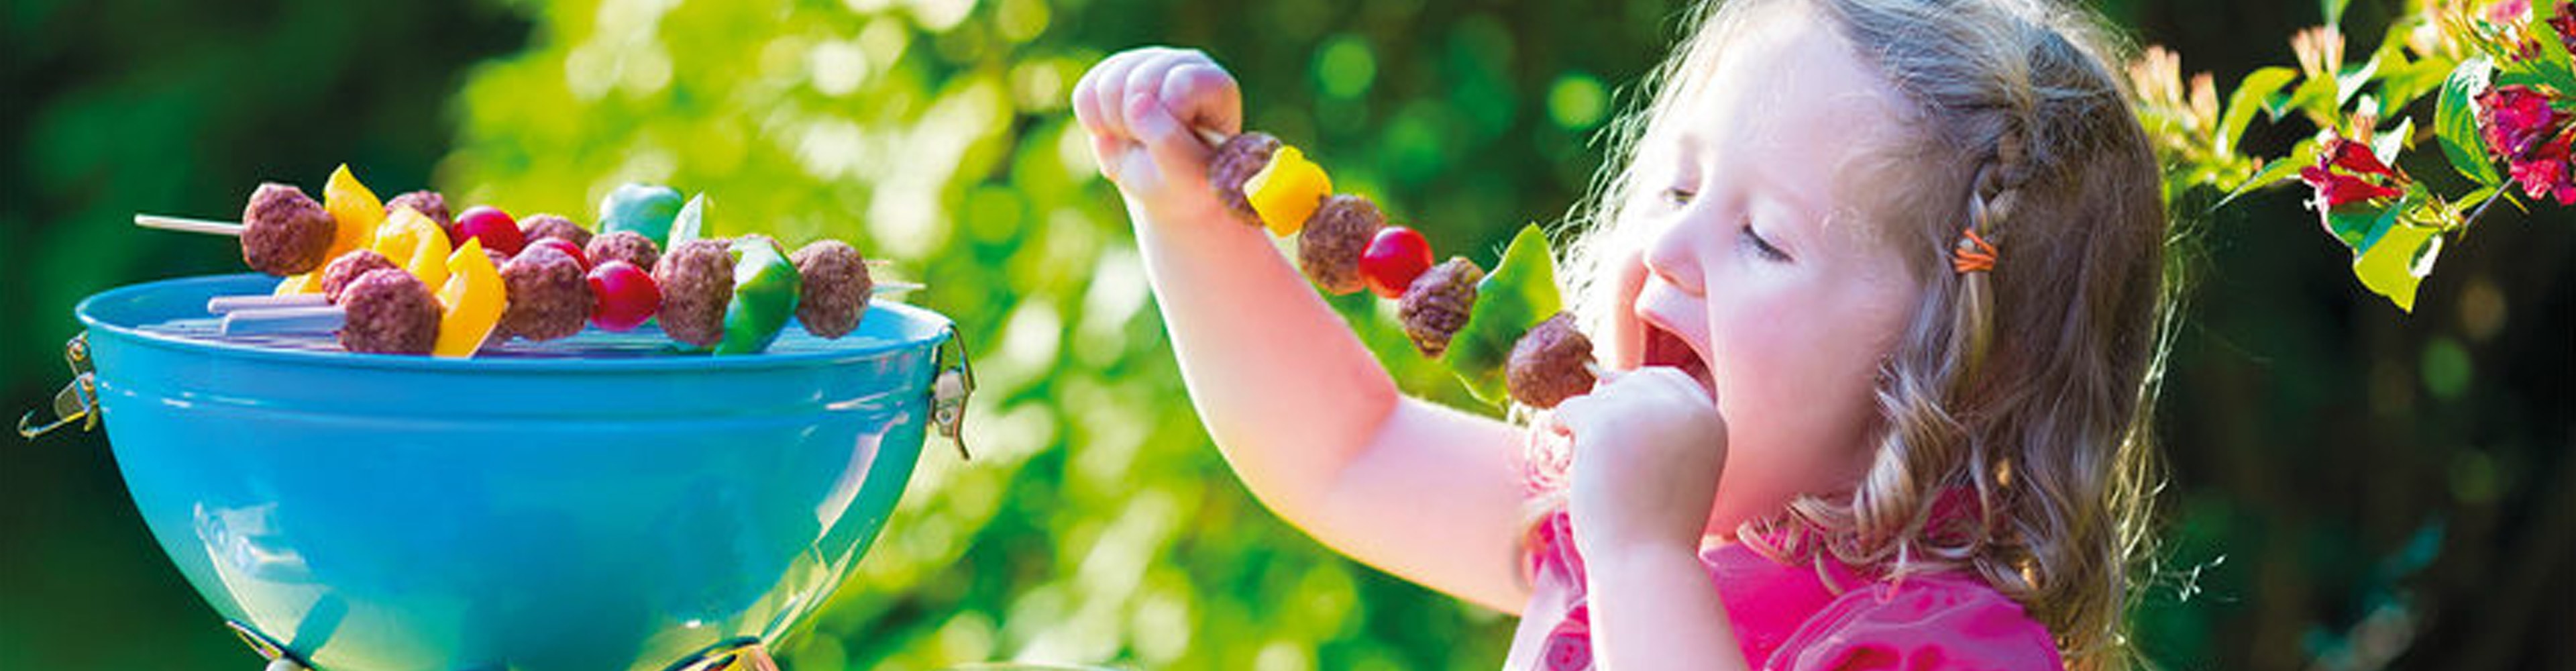 Sommer, Sonne – Grillsaison! Mit unseren Tipps & Rezepten wird’s auch für die Kids ein Riesenspass.